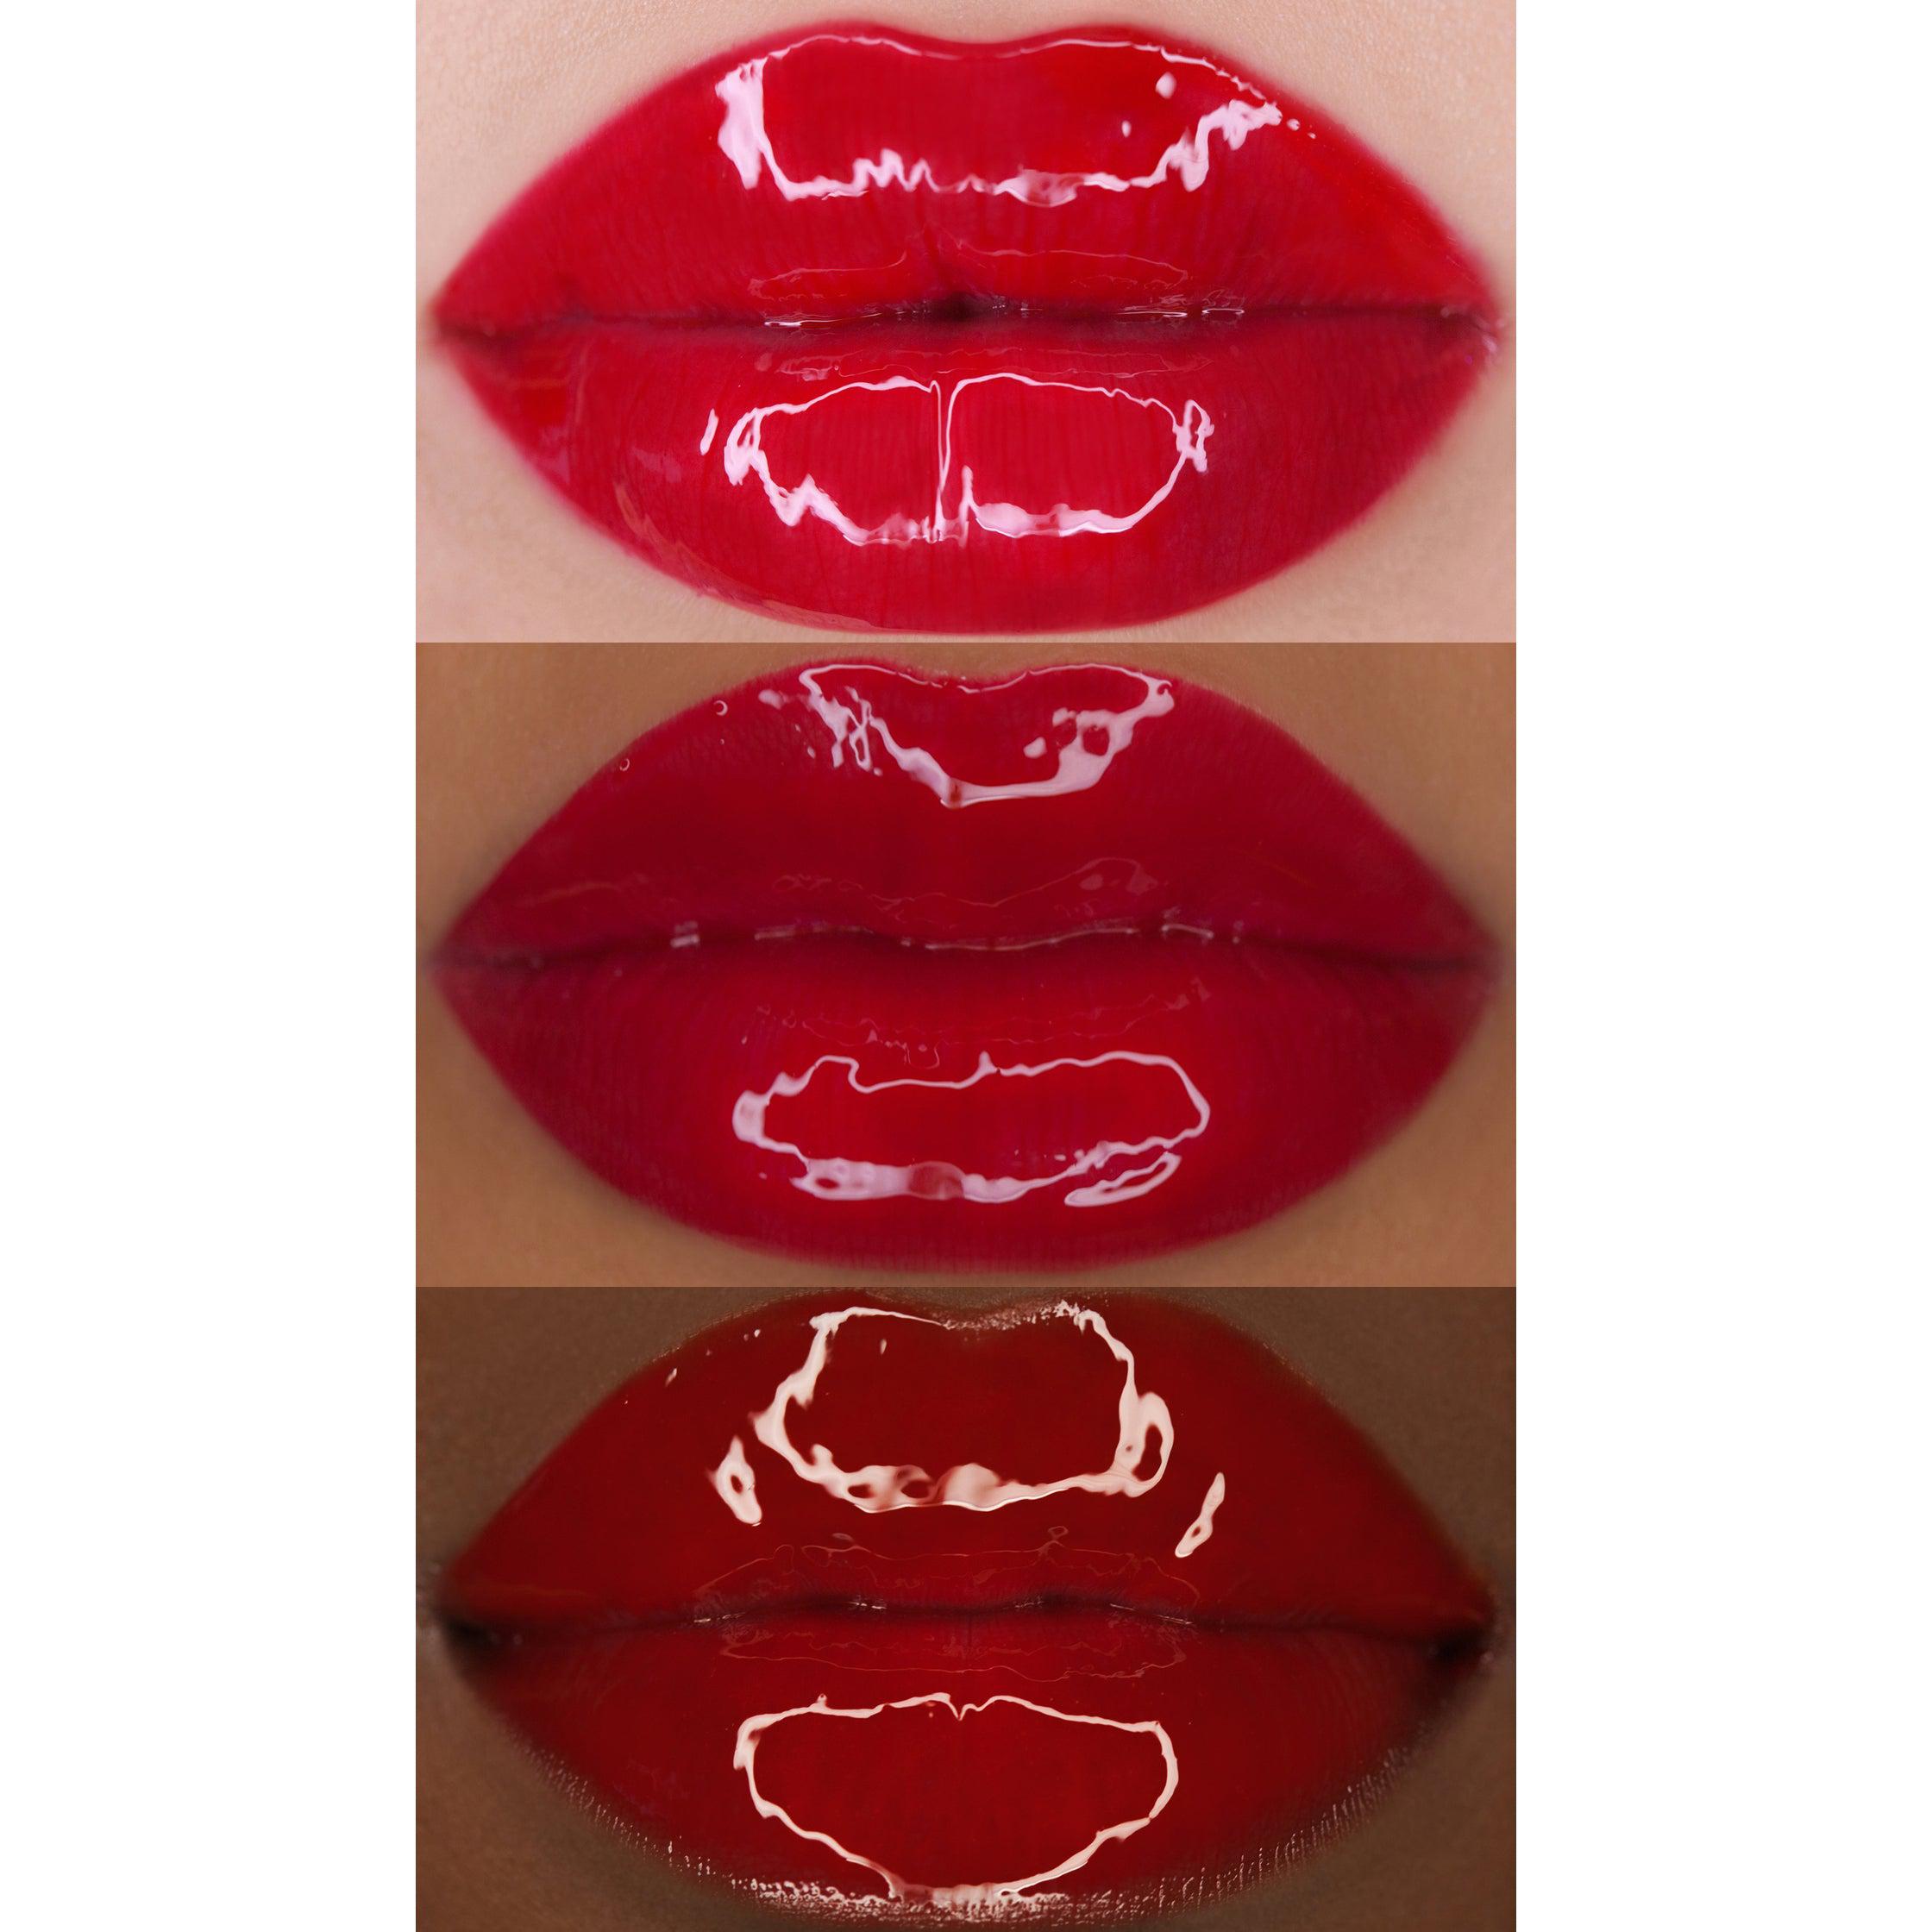 Wet Cherry Lip Gloss variant:Maraschino Cherry